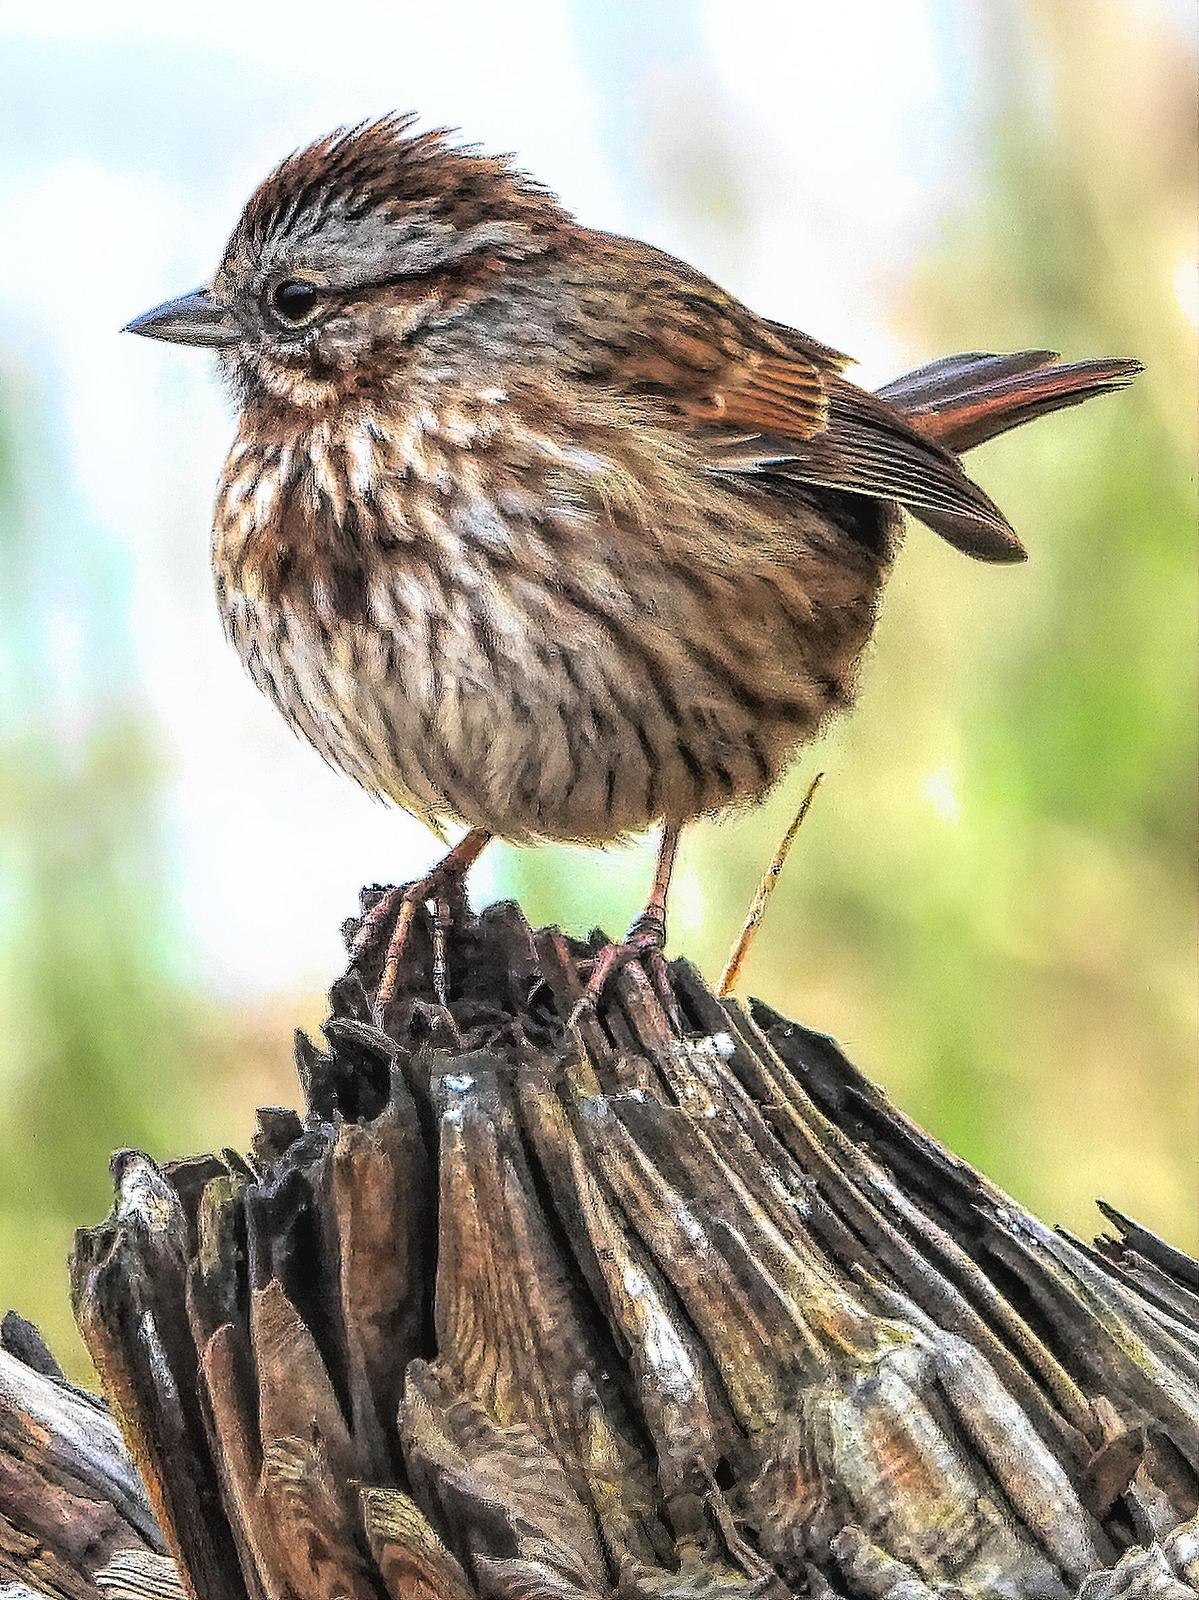 Song Sparrow Photo by Dan Tallman